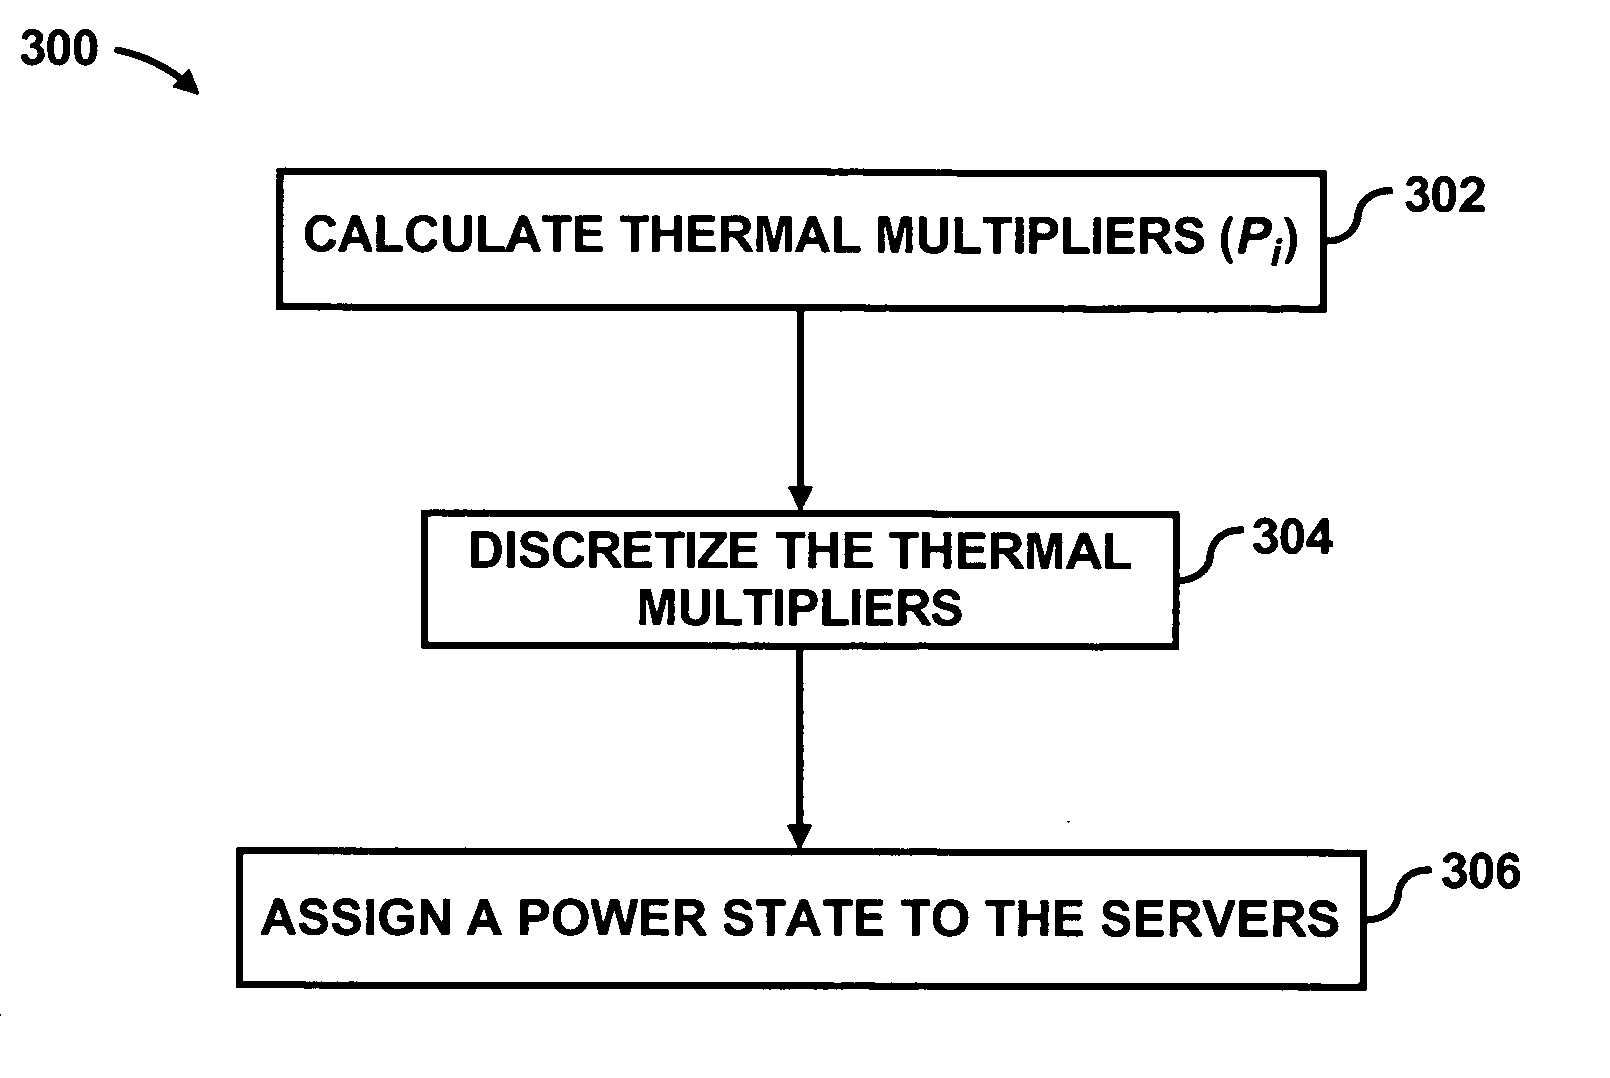 Power distribution among servers